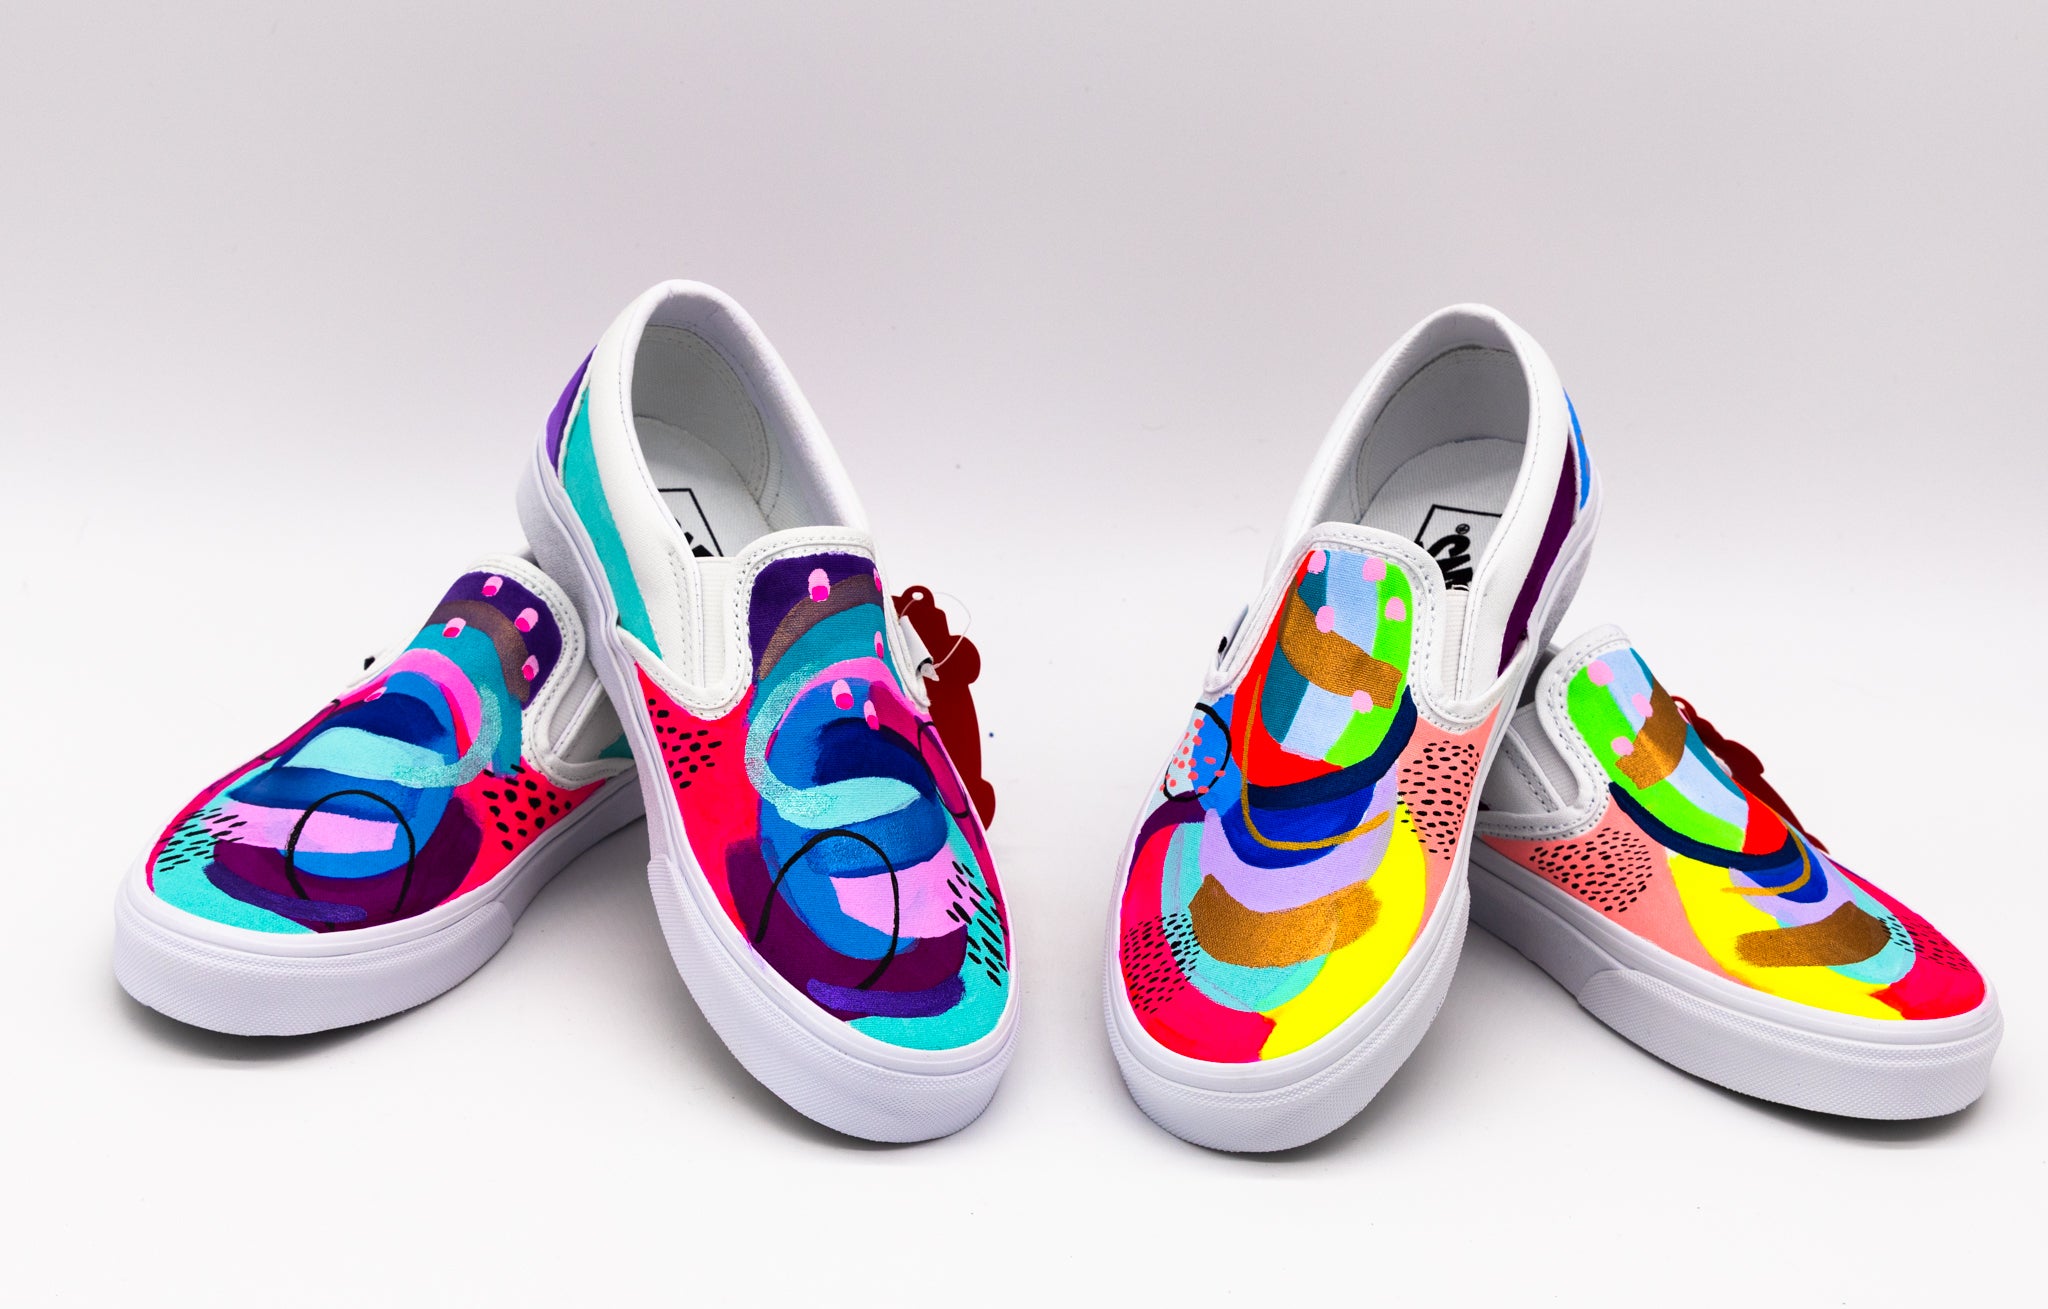 ecstasy ale fotoelektrisk Kids Custom painted Vans Shoes – Suze Ford Studios